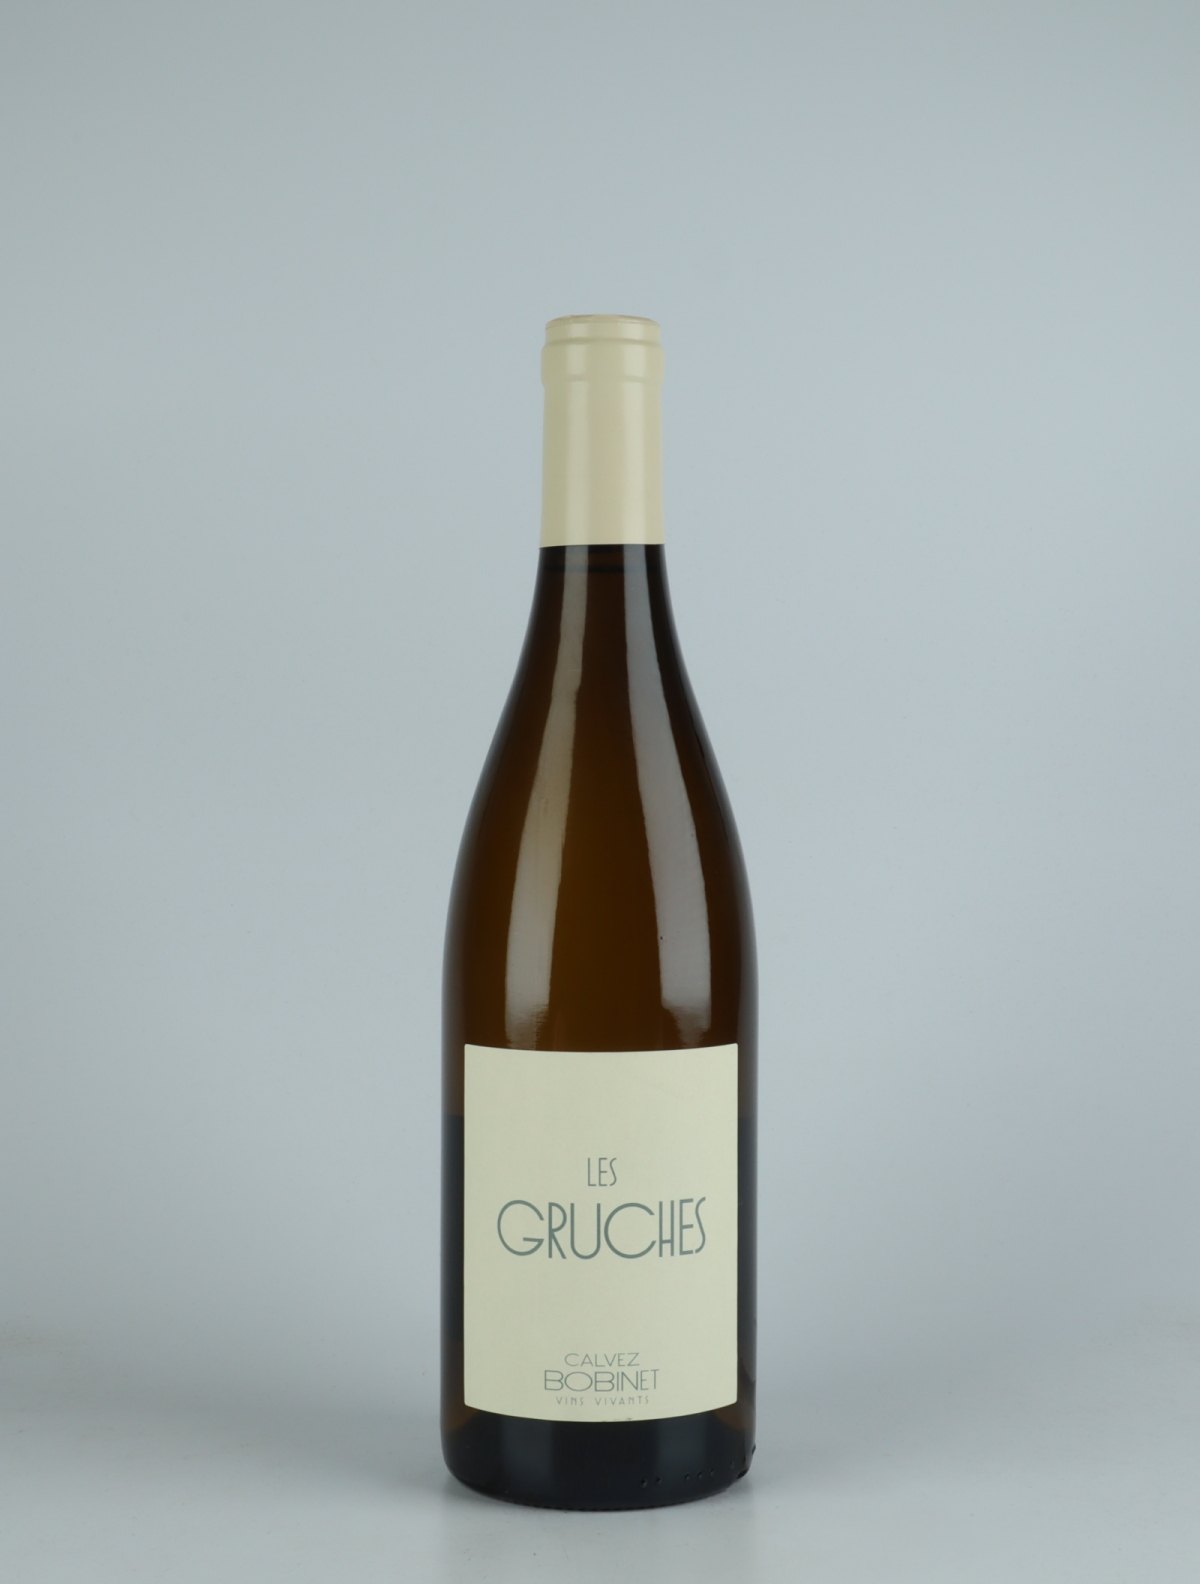 En flaske 2019 Saumur Blanc - Les Gruches Hvidvin fra Domaine Bobinet, Loire i Frankrig